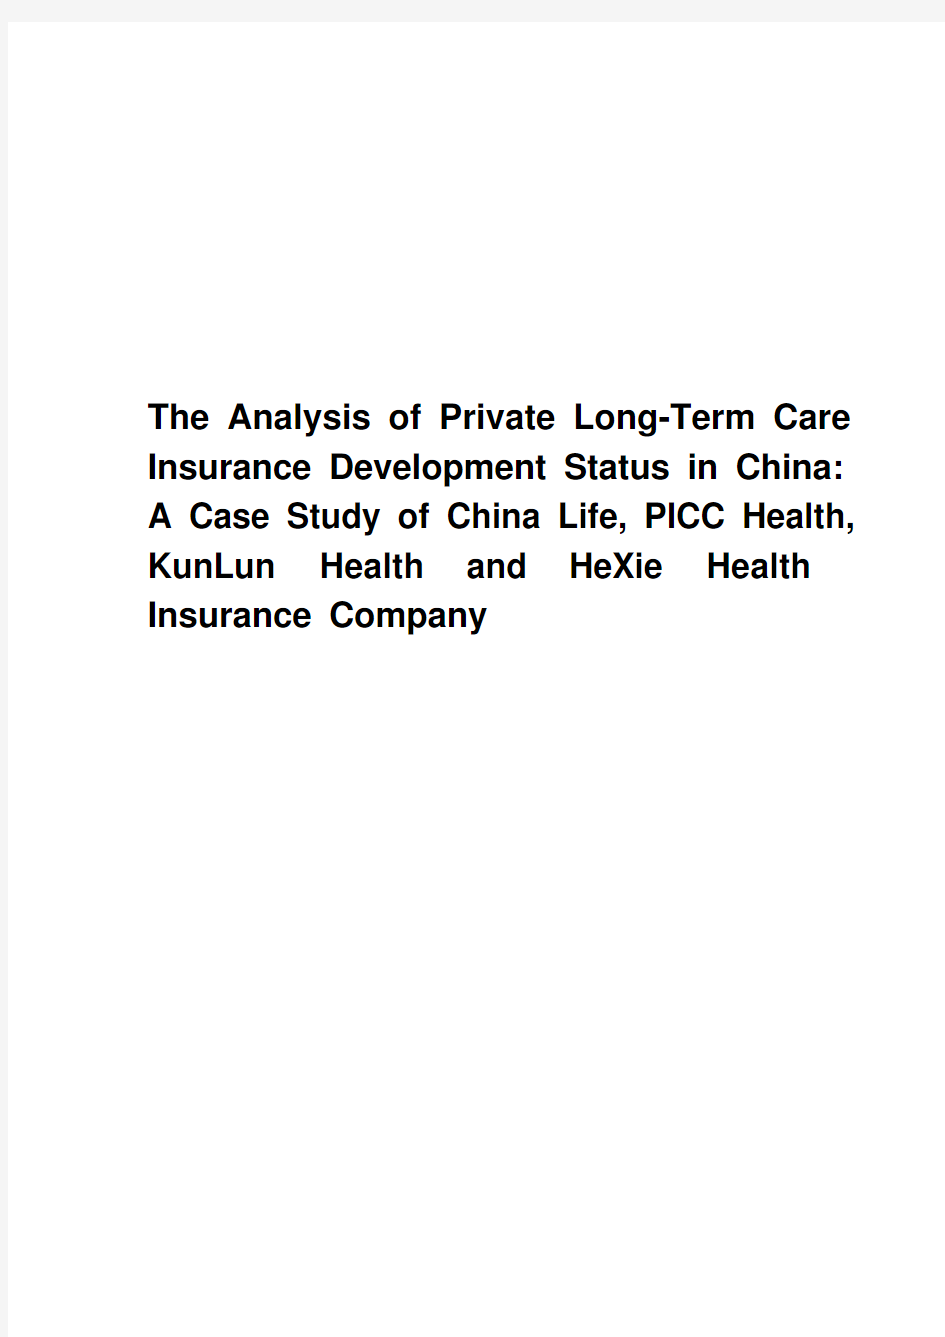 我国商业长期护理保险发展现状分析——以中国人寿、人保健康、昆仑健康、和谐健康为例